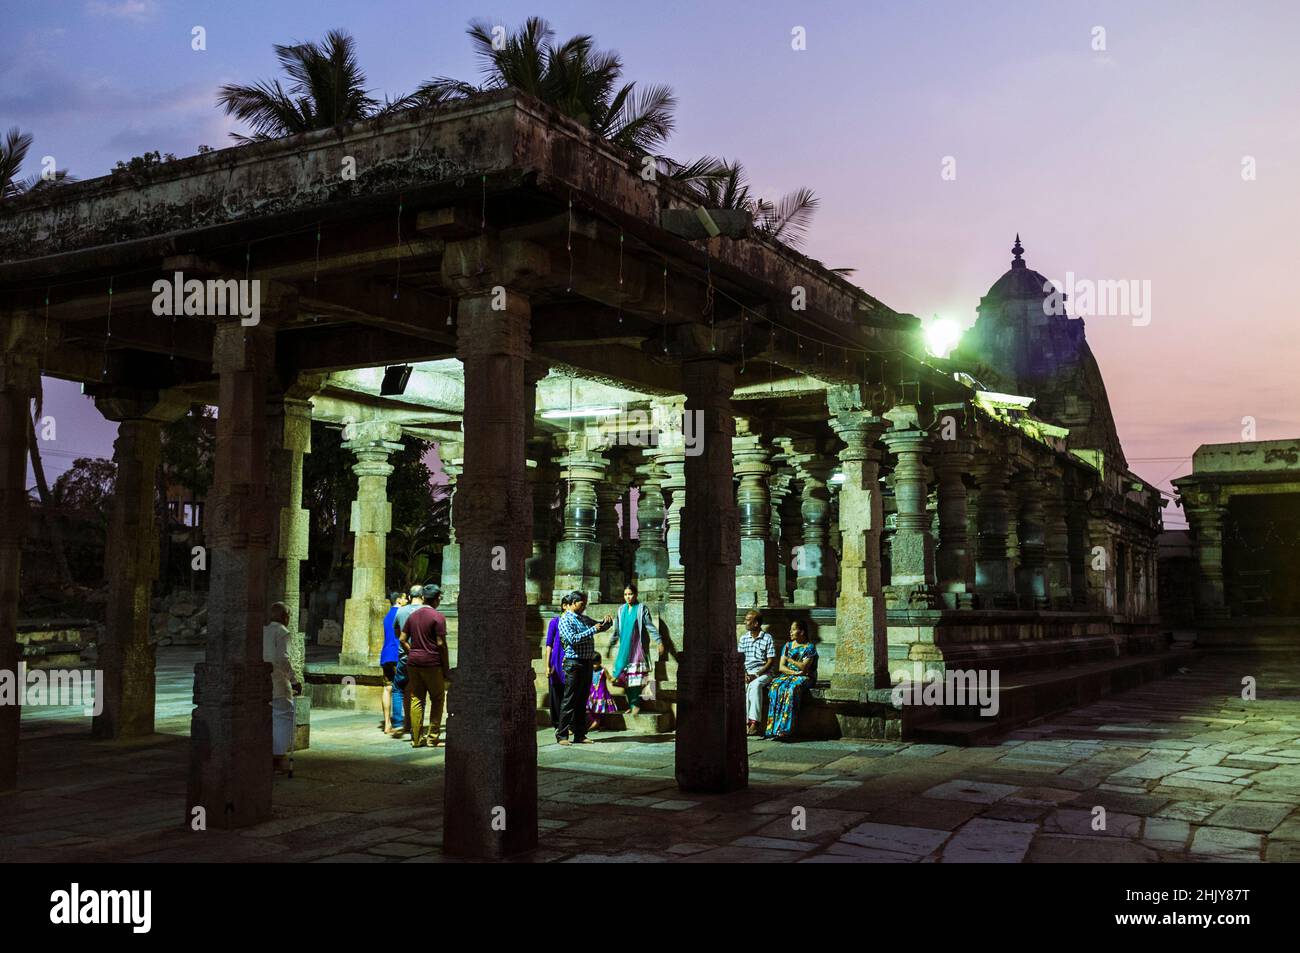 Belur, Karnataka, Inde : Un groupe de personnes se tient au crépuscule sous l'un des temples du complexe du temple de Channakhava. Banque D'Images